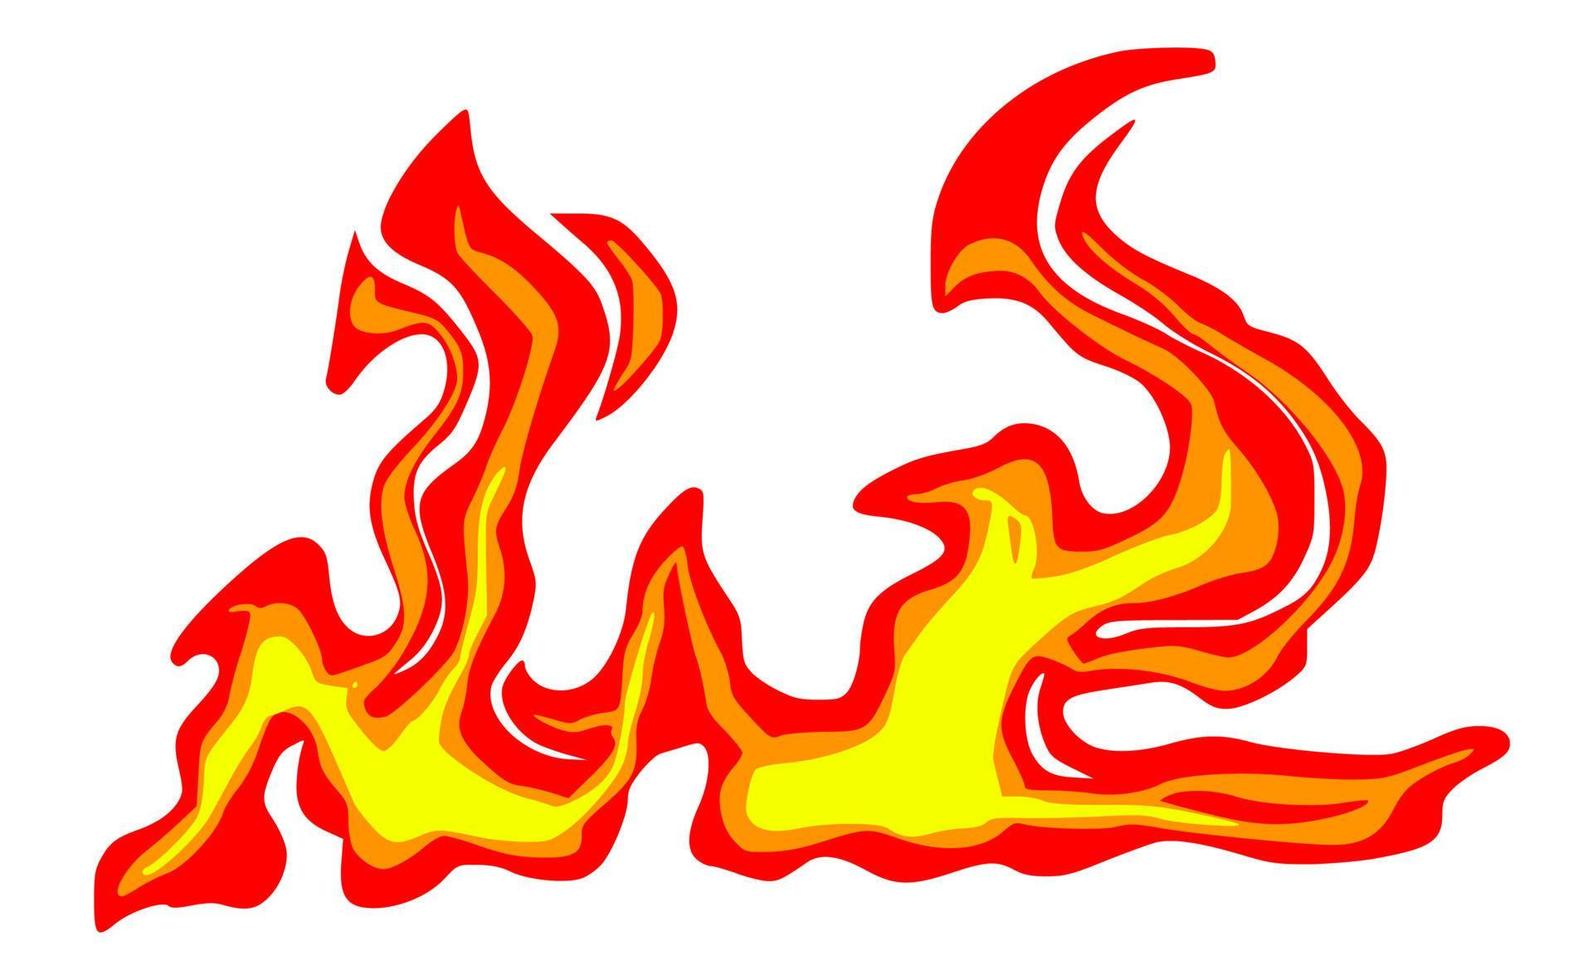 Fire cartoon element vector